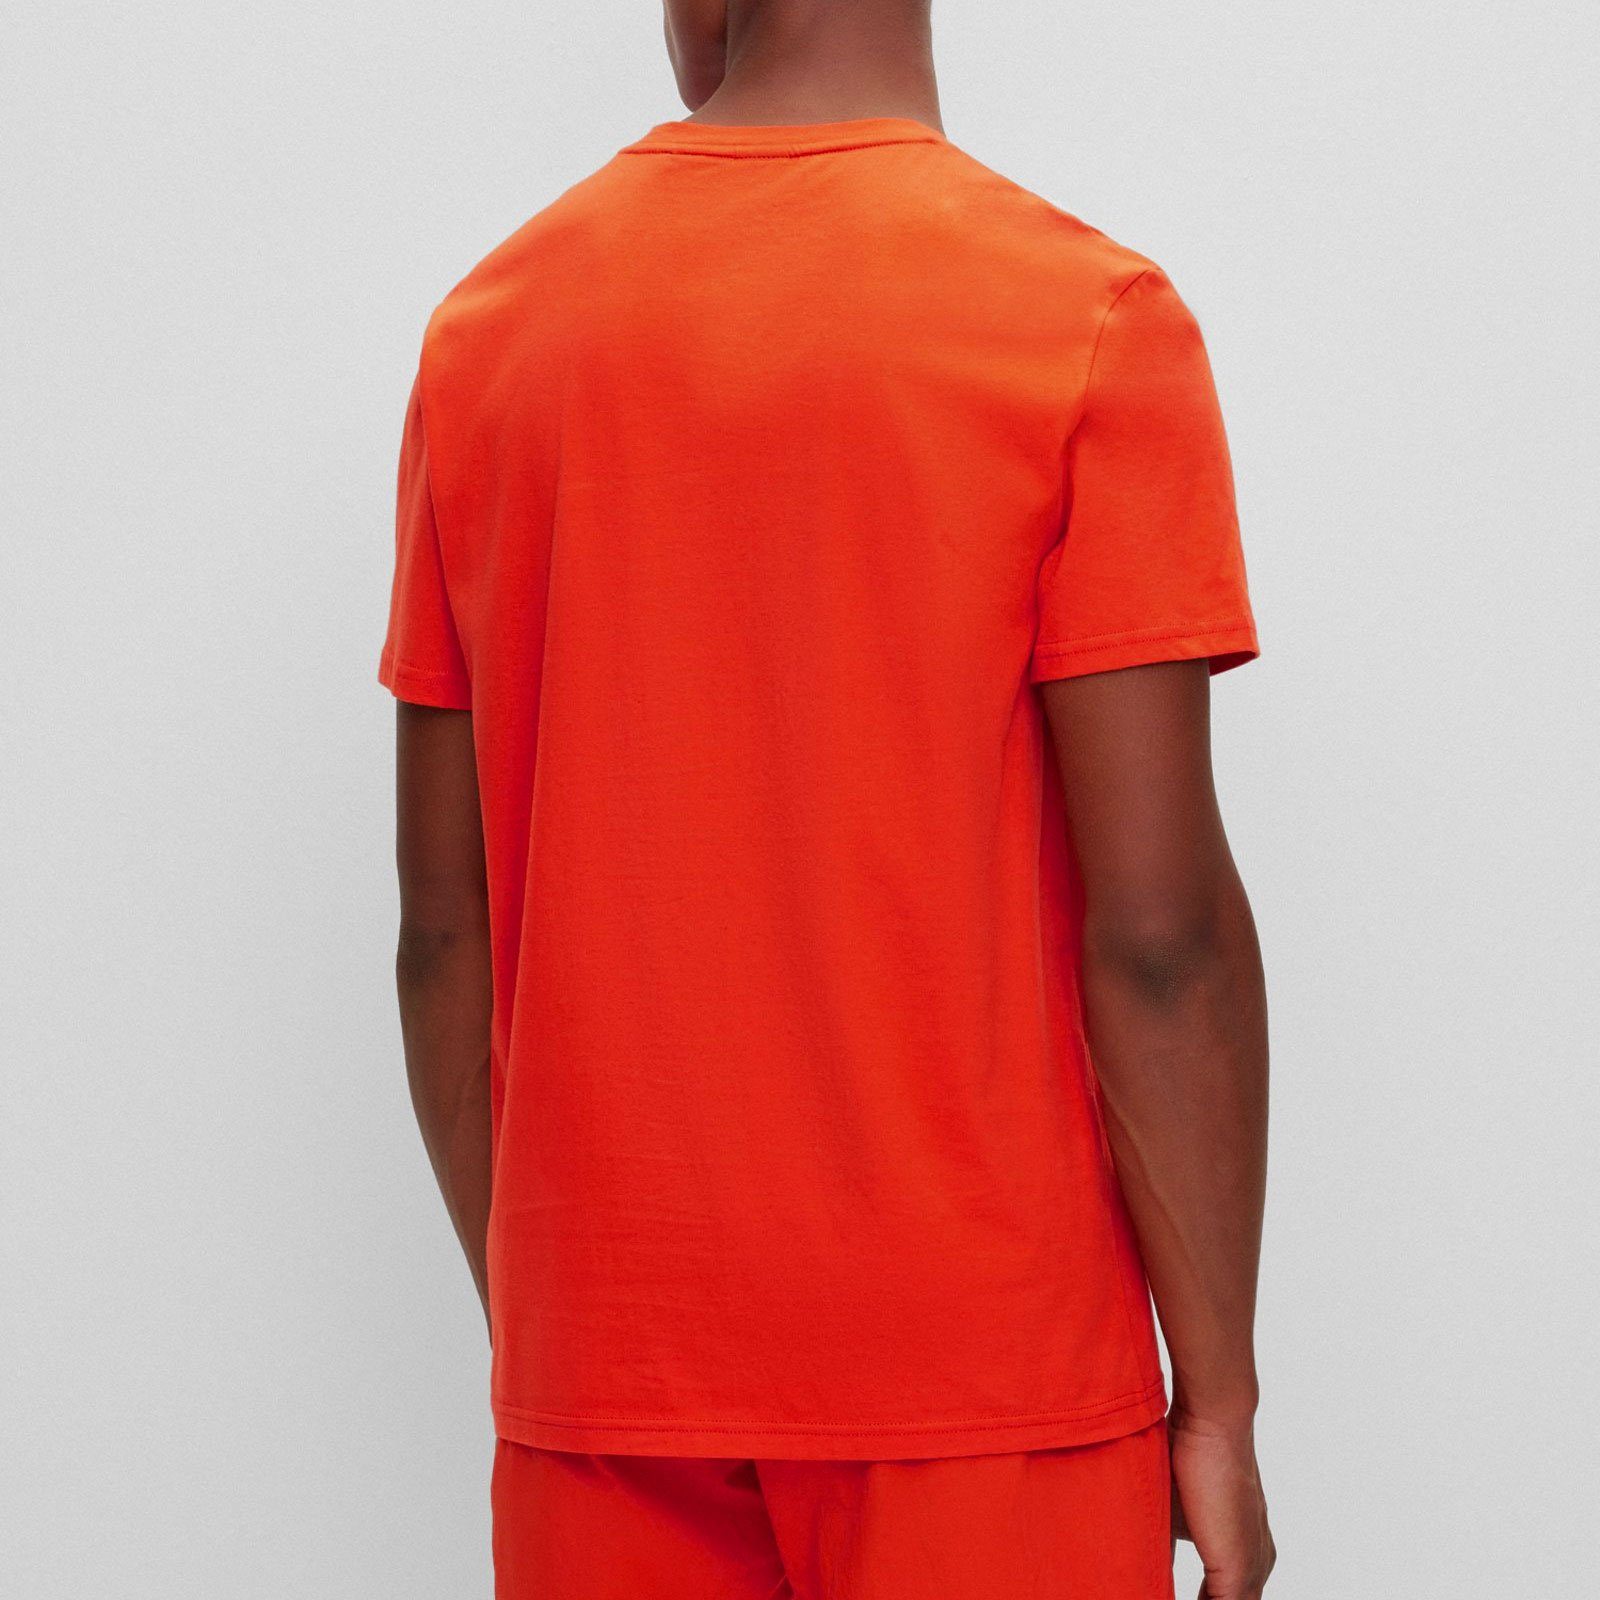 auf der bright T-Shirt Brust BOSS Markenprint mit orange RN T-Shirt großem 821